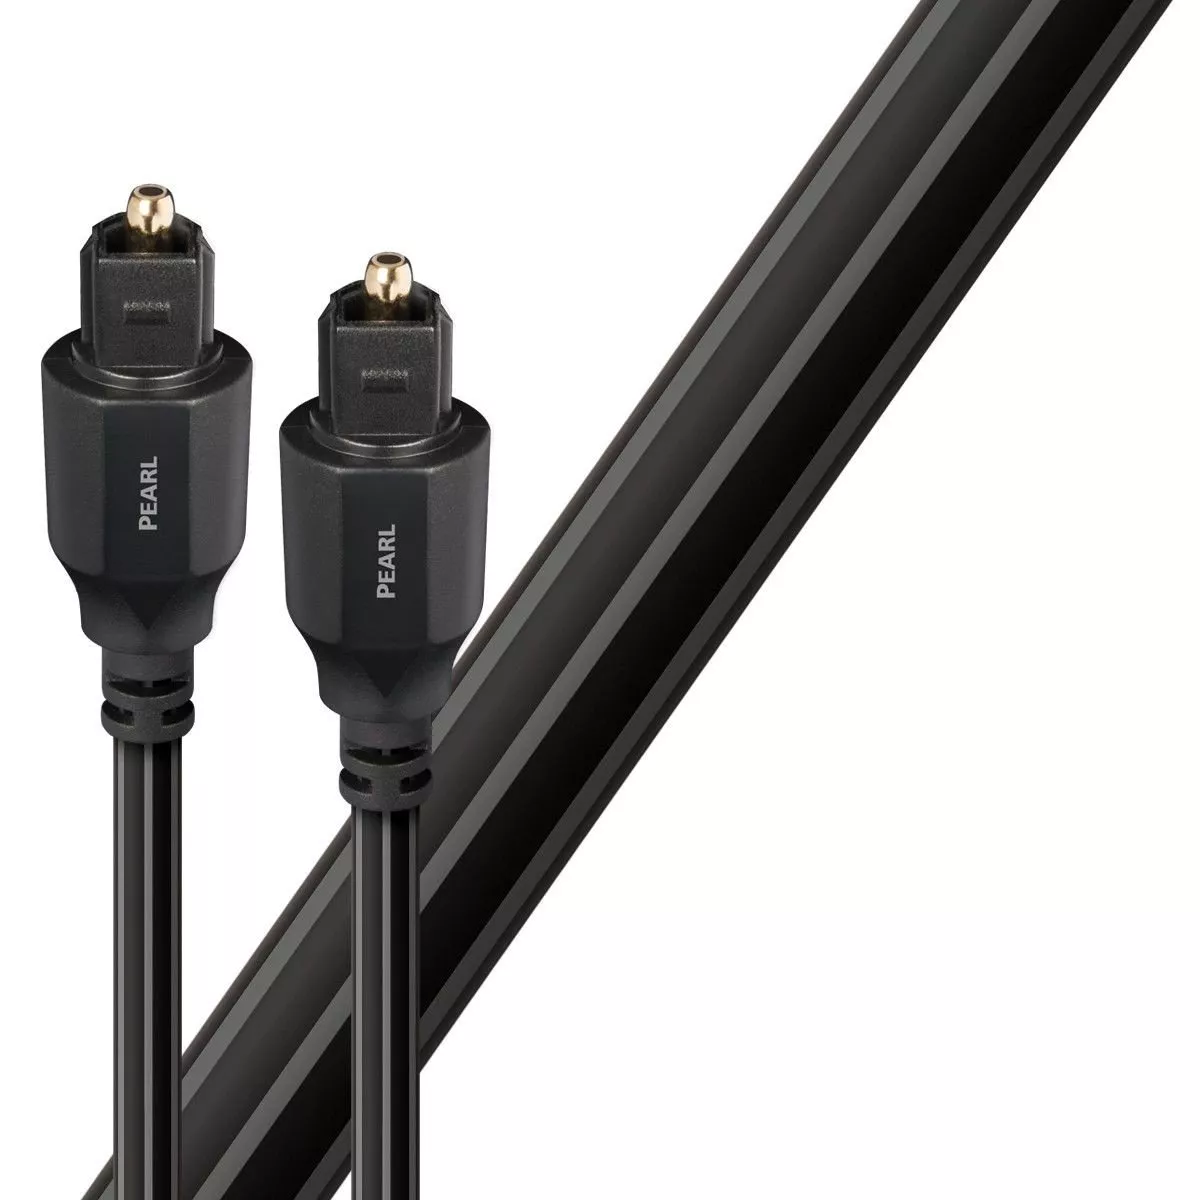 Cablu optic Toslink - Toslink AudioQuest Pearl 3 m, [],audioclub.ro